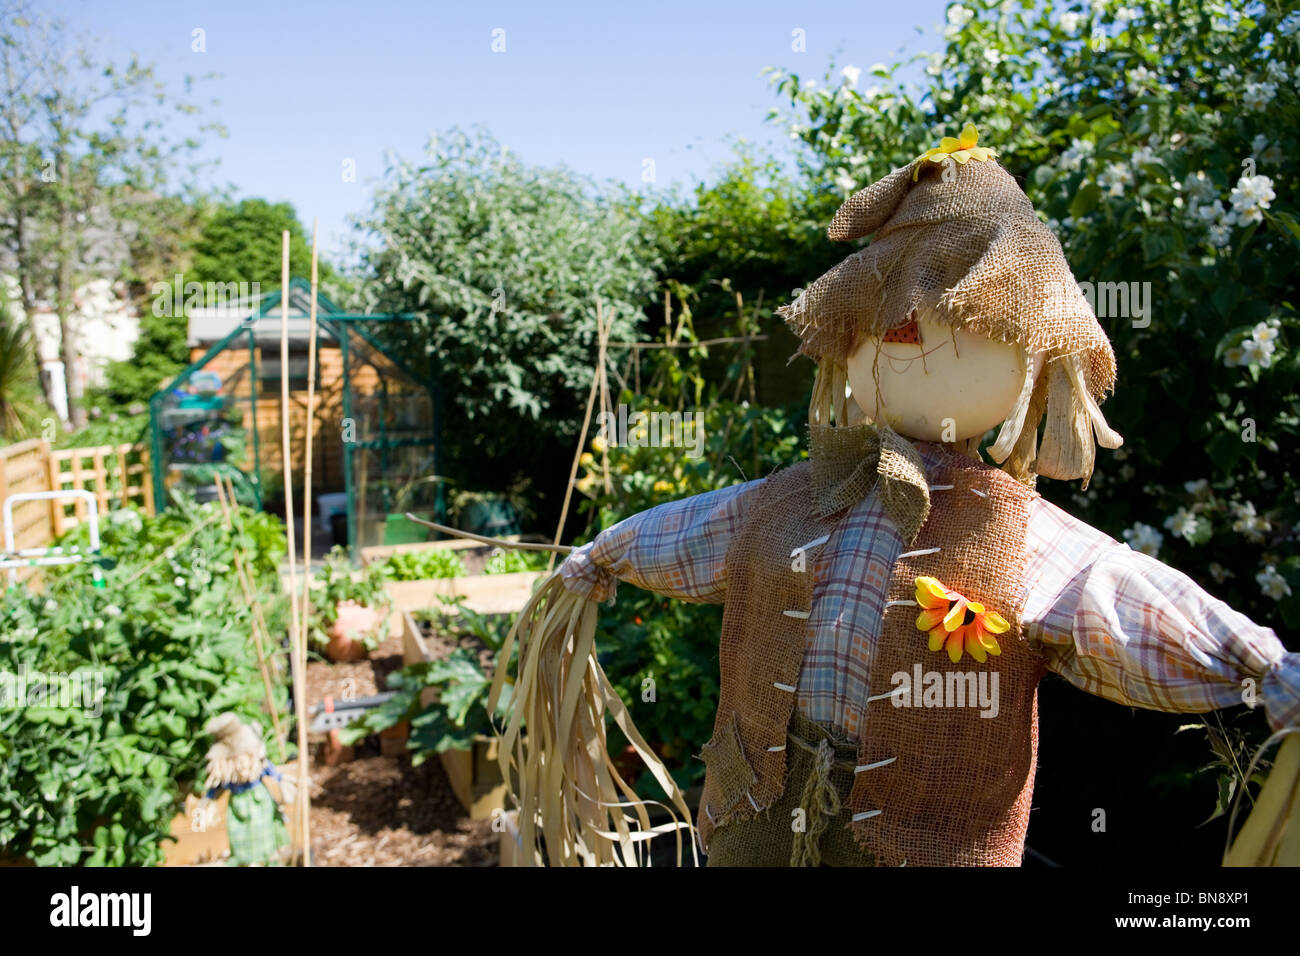 Épouvantail épouvantail dans un jardin potager Portesham, Dorset, UK Banque D'Images